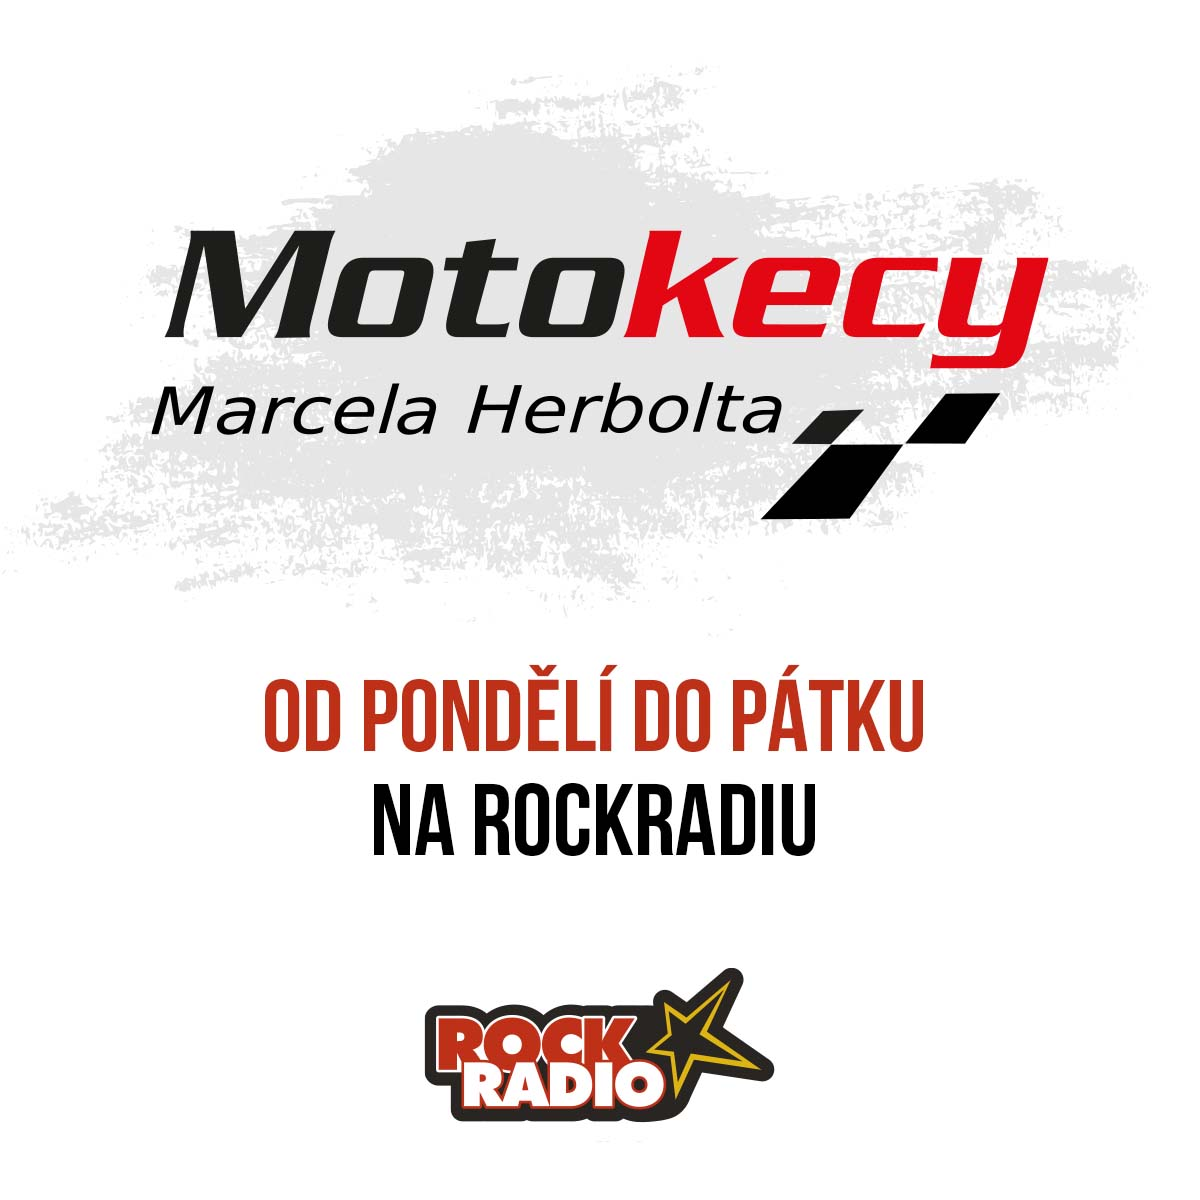 Motokecy Marcela Herbolta na čtvrtek 21. září